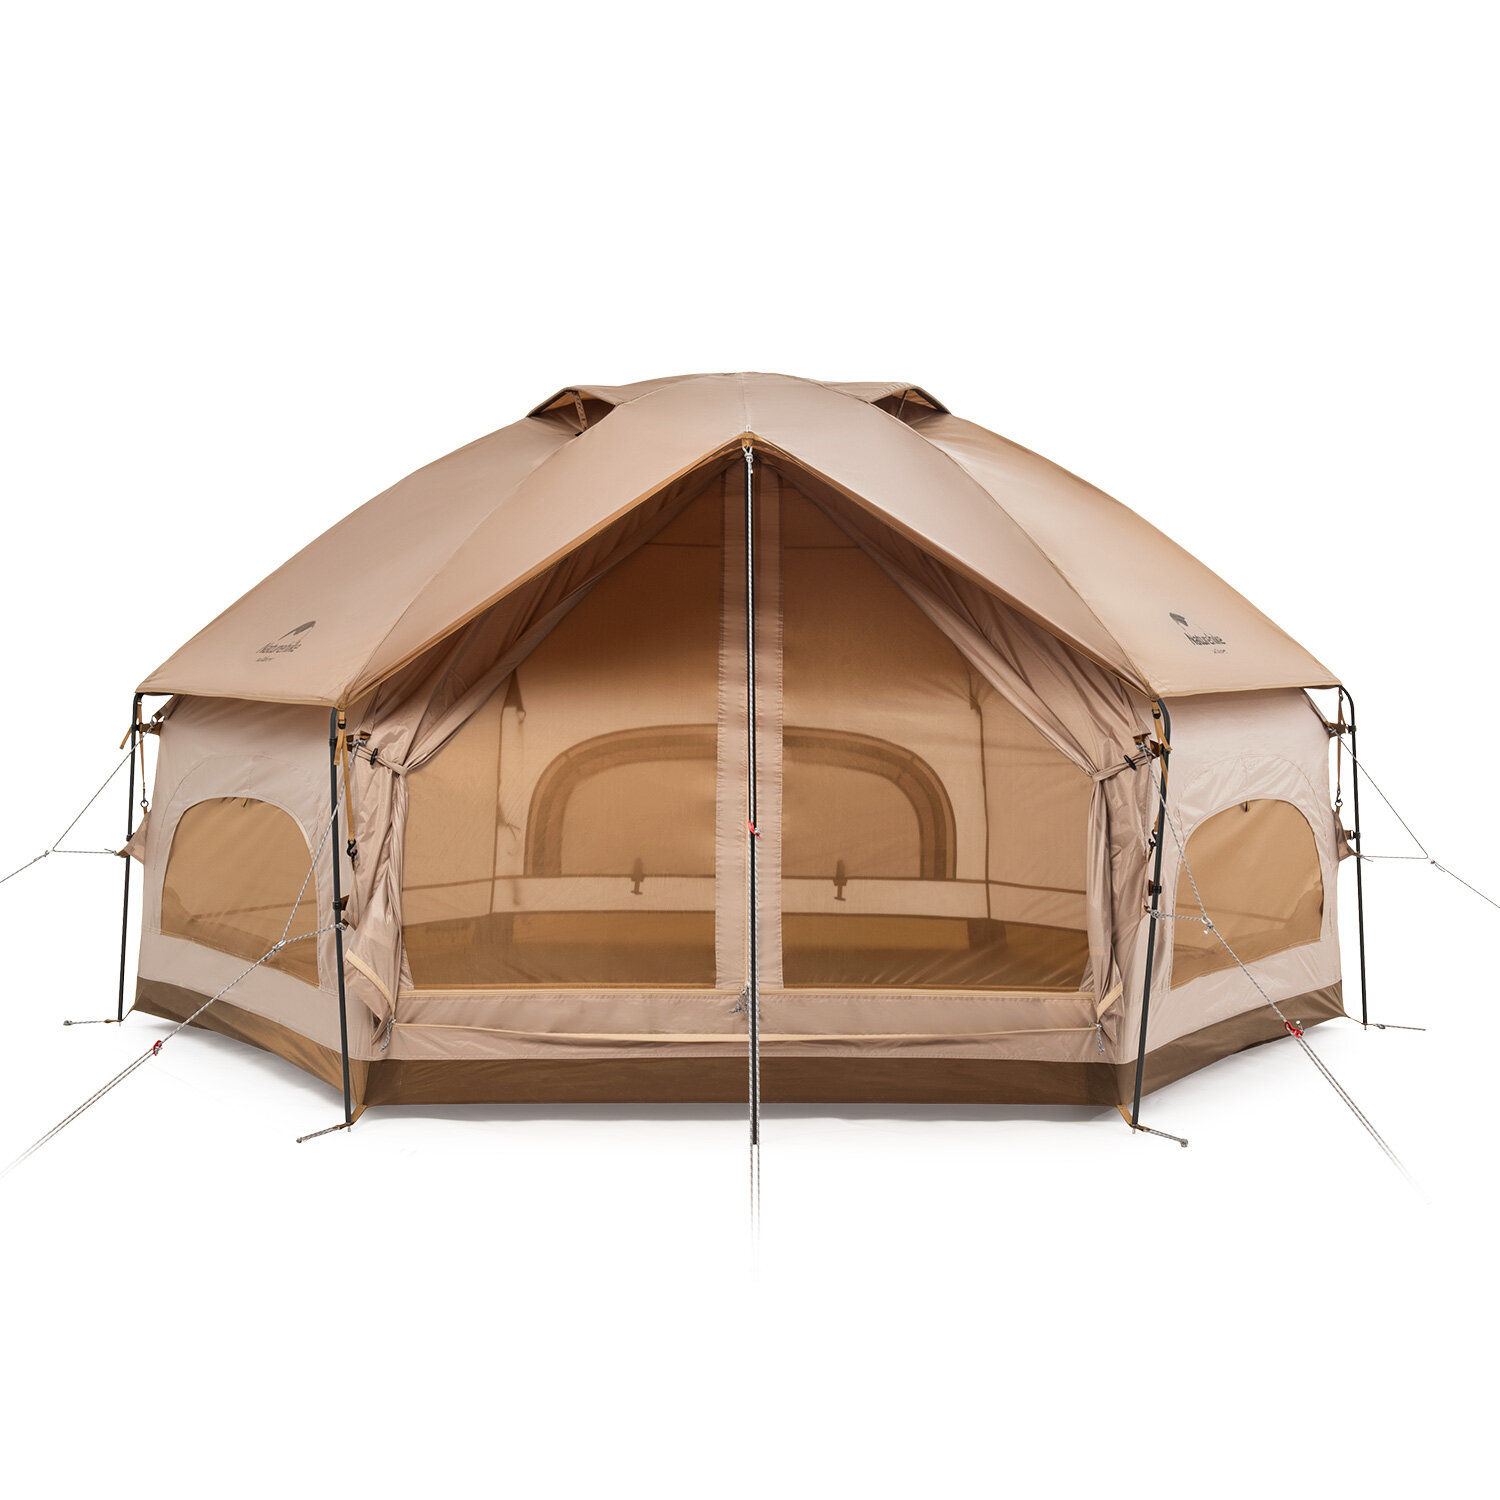 Наматрасник Naturehike Hexagonal Tent из полиэстера 210T с алюминиевым сплавом, водонепроницаемый и дышащий, для кемпинга и путешествий на природе.